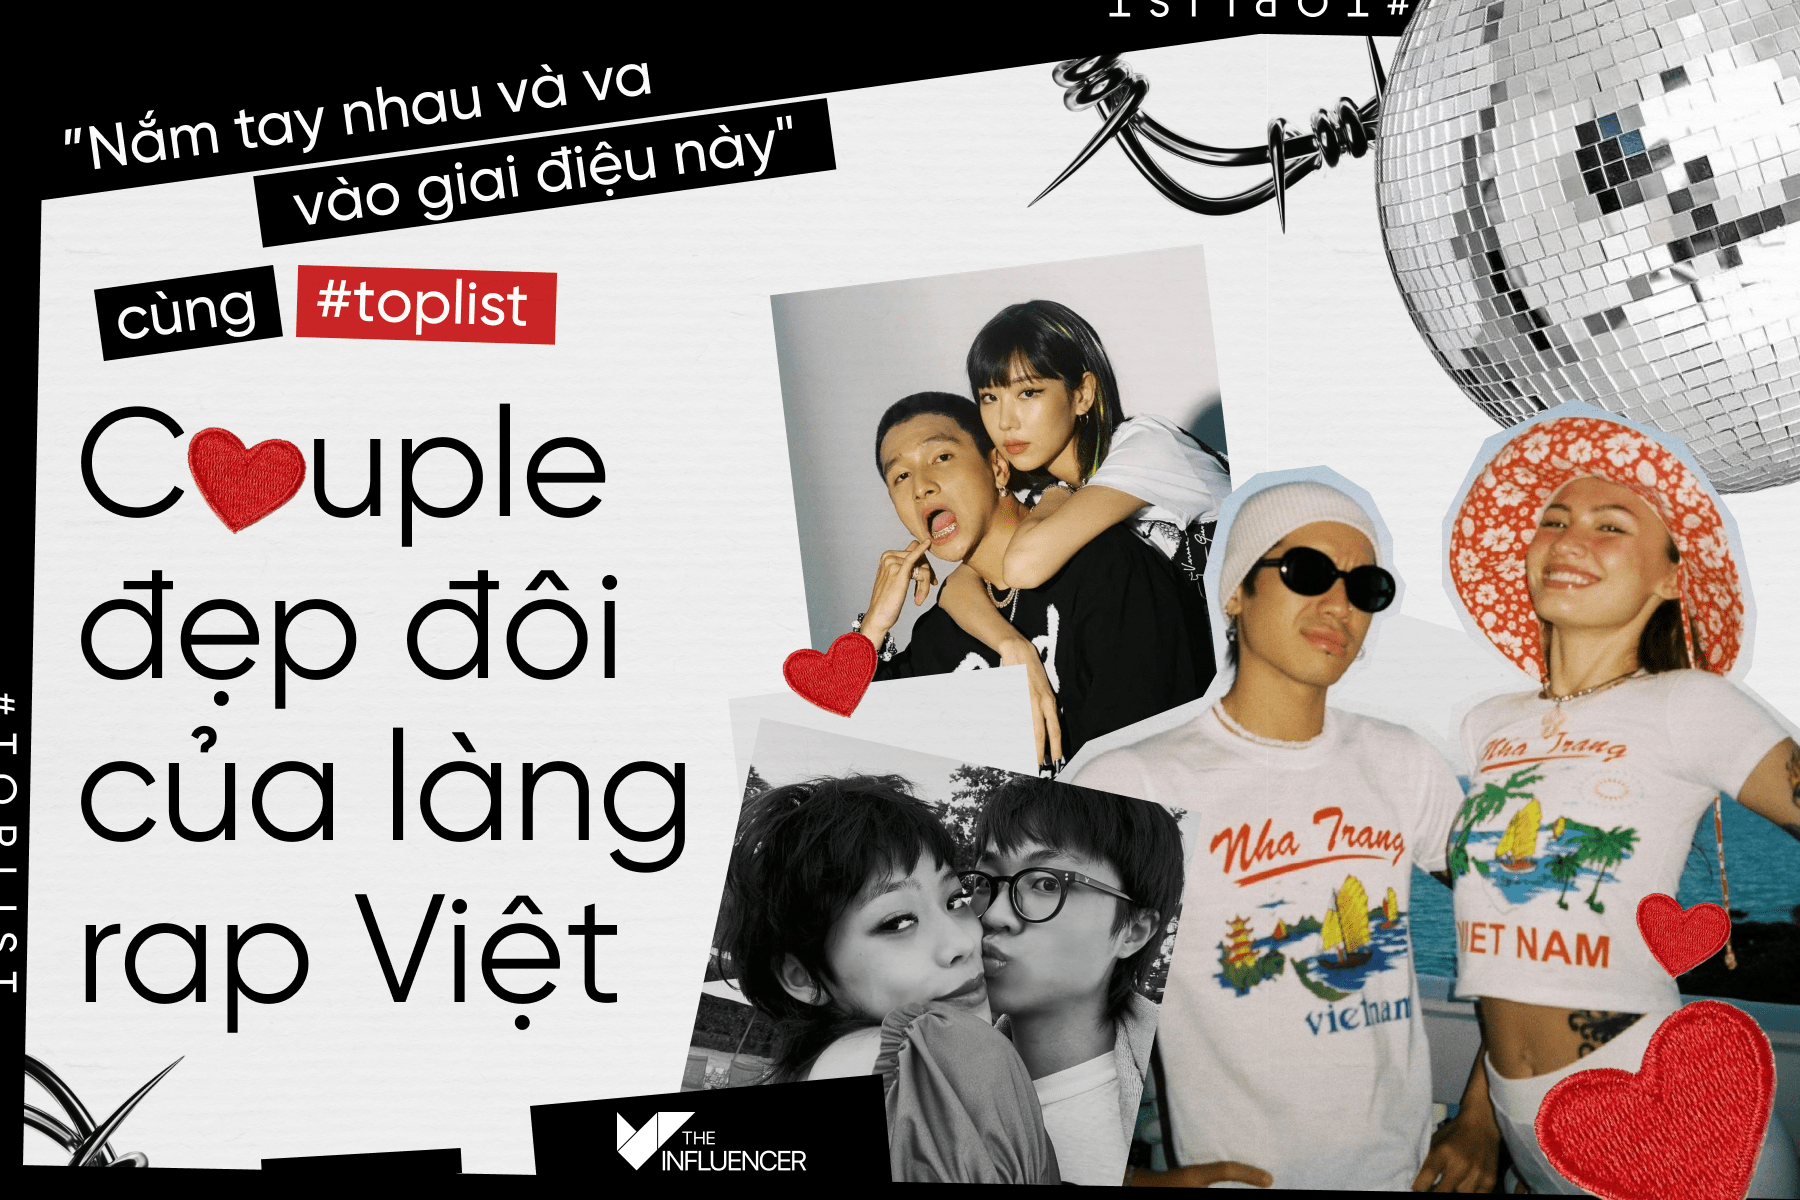 "Nắm tay nhau và va vào giai điệu này" cùng #Toplist couple đẹp đôi của làng rap Việt